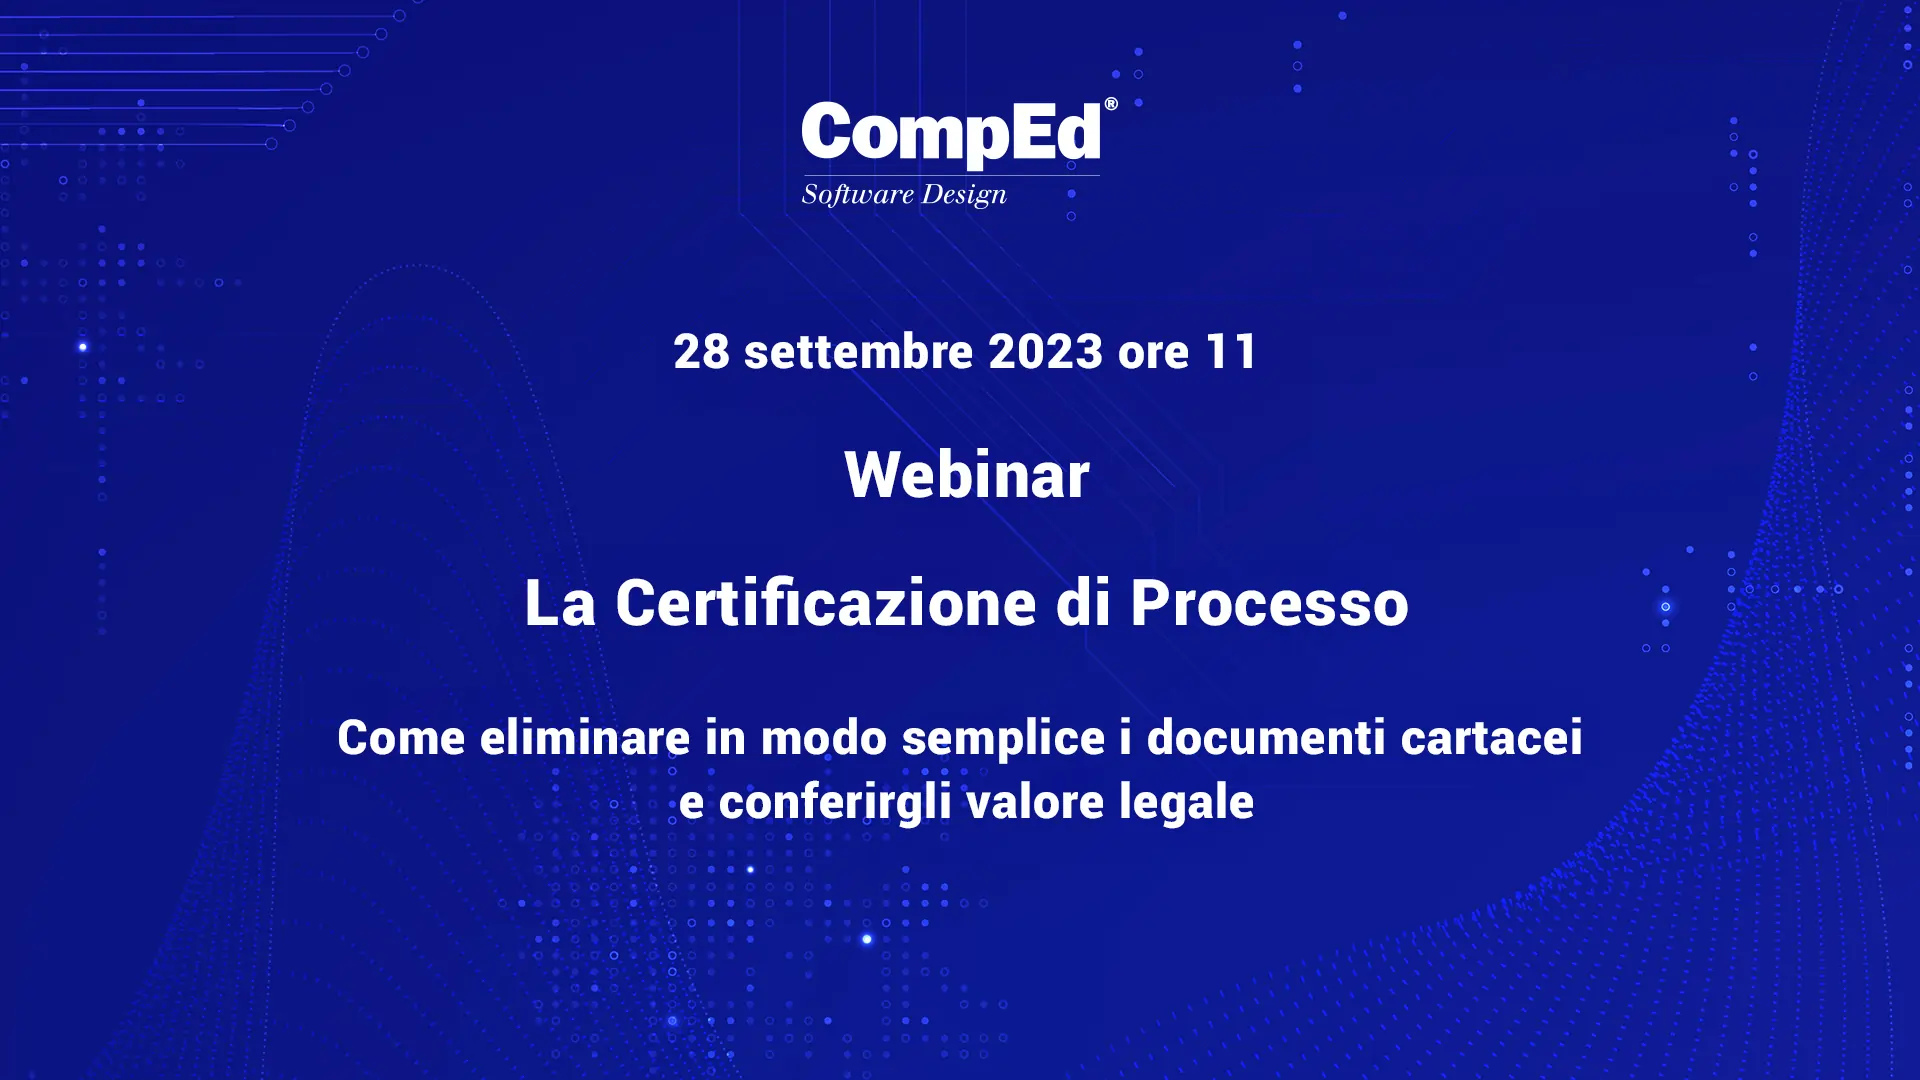 Webinar-La Certificazione di Processo-Come eliminare in modo semplice i documenti cartacei e conferirgli valore legale